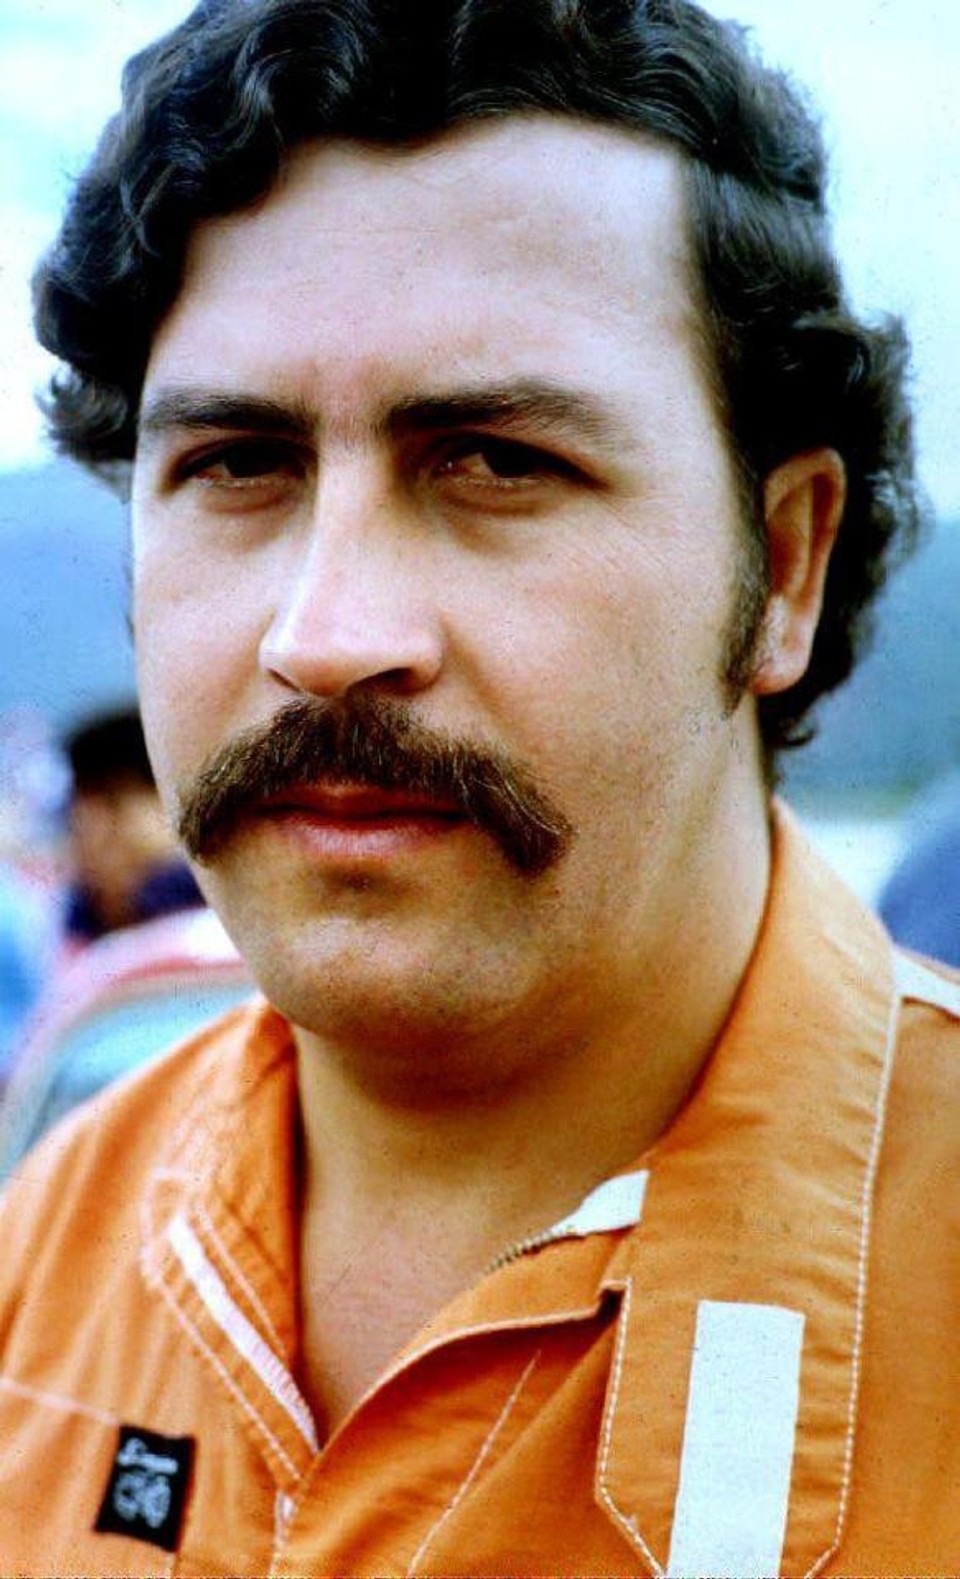 Kolumbijský boss drogového kartelu Pablo Escobar bol zodpovedný za tisícky vrážd počas krvavej vojny s kolumbijskou vládou